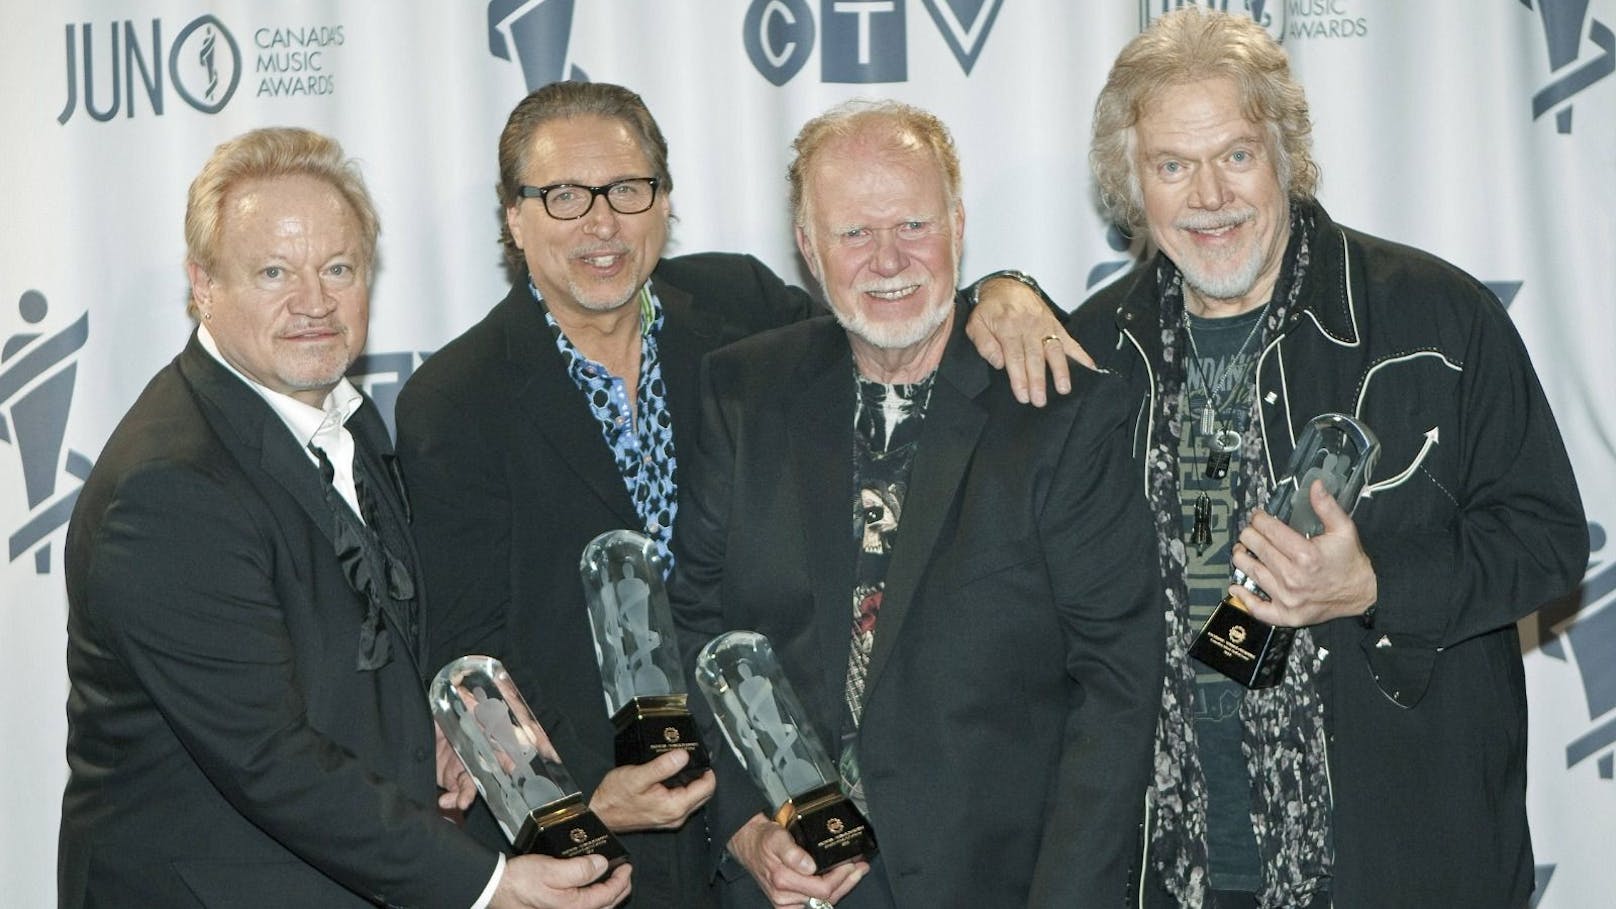 Robbie Bachman (links) und seine "Bachman-Turner-Overdrive"-Bandkollegen bei der Aufnahme in die Canadian Music Hall Of Fame, 2014